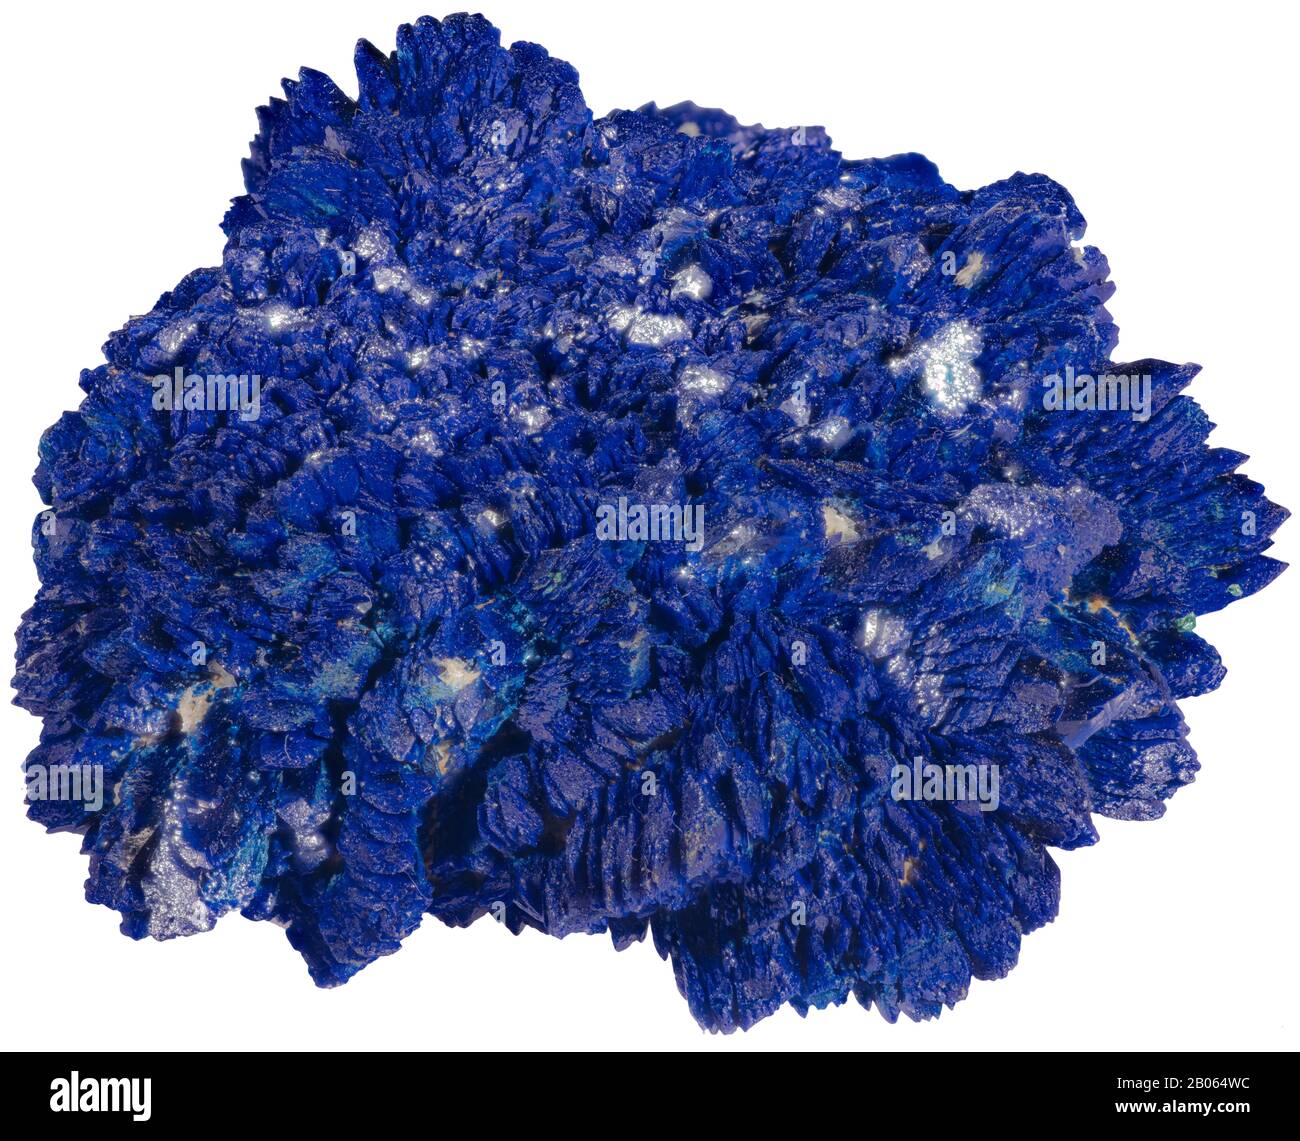 Azurit ist ein weicher Stein, der für seine tiefe "azurblaue" Farbe benannt ist. Es ist ein Kupfercarbonatmineral, das in den oberen oxidierten Teilen von Kupfererz fo gefunden wird Stockfoto